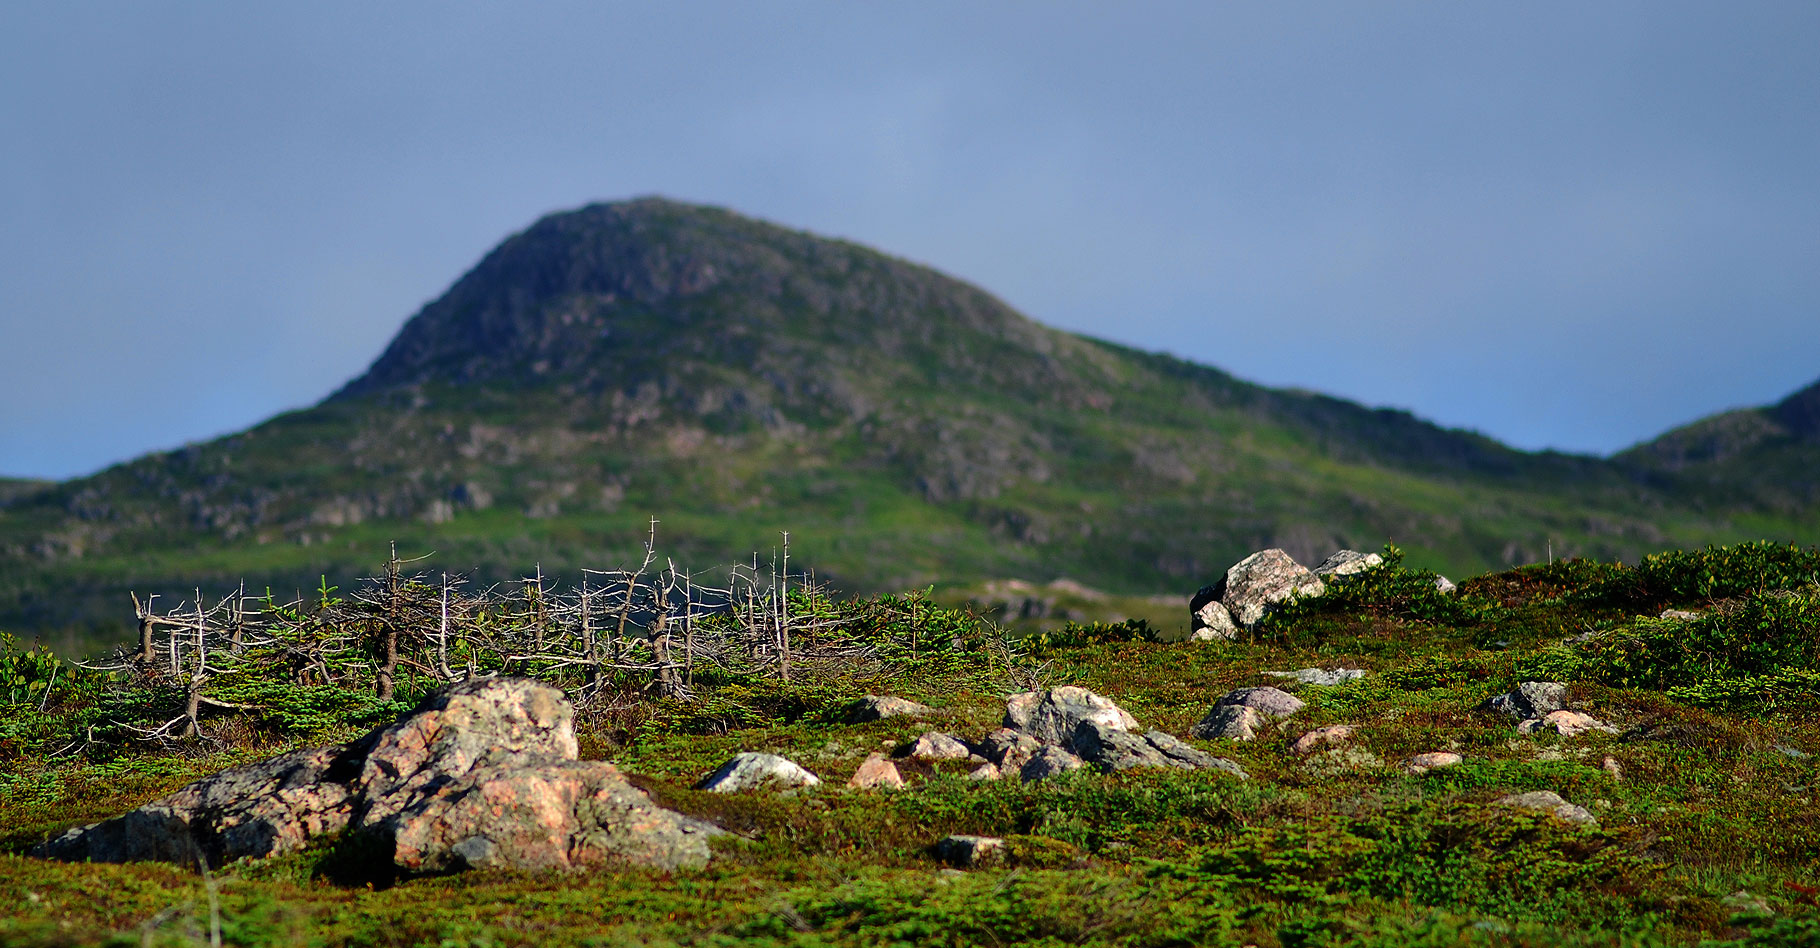 Les tourbières de St Pierre et Miquelon.&nbsp;© Gord McKenna - CC BY-NC 2.0